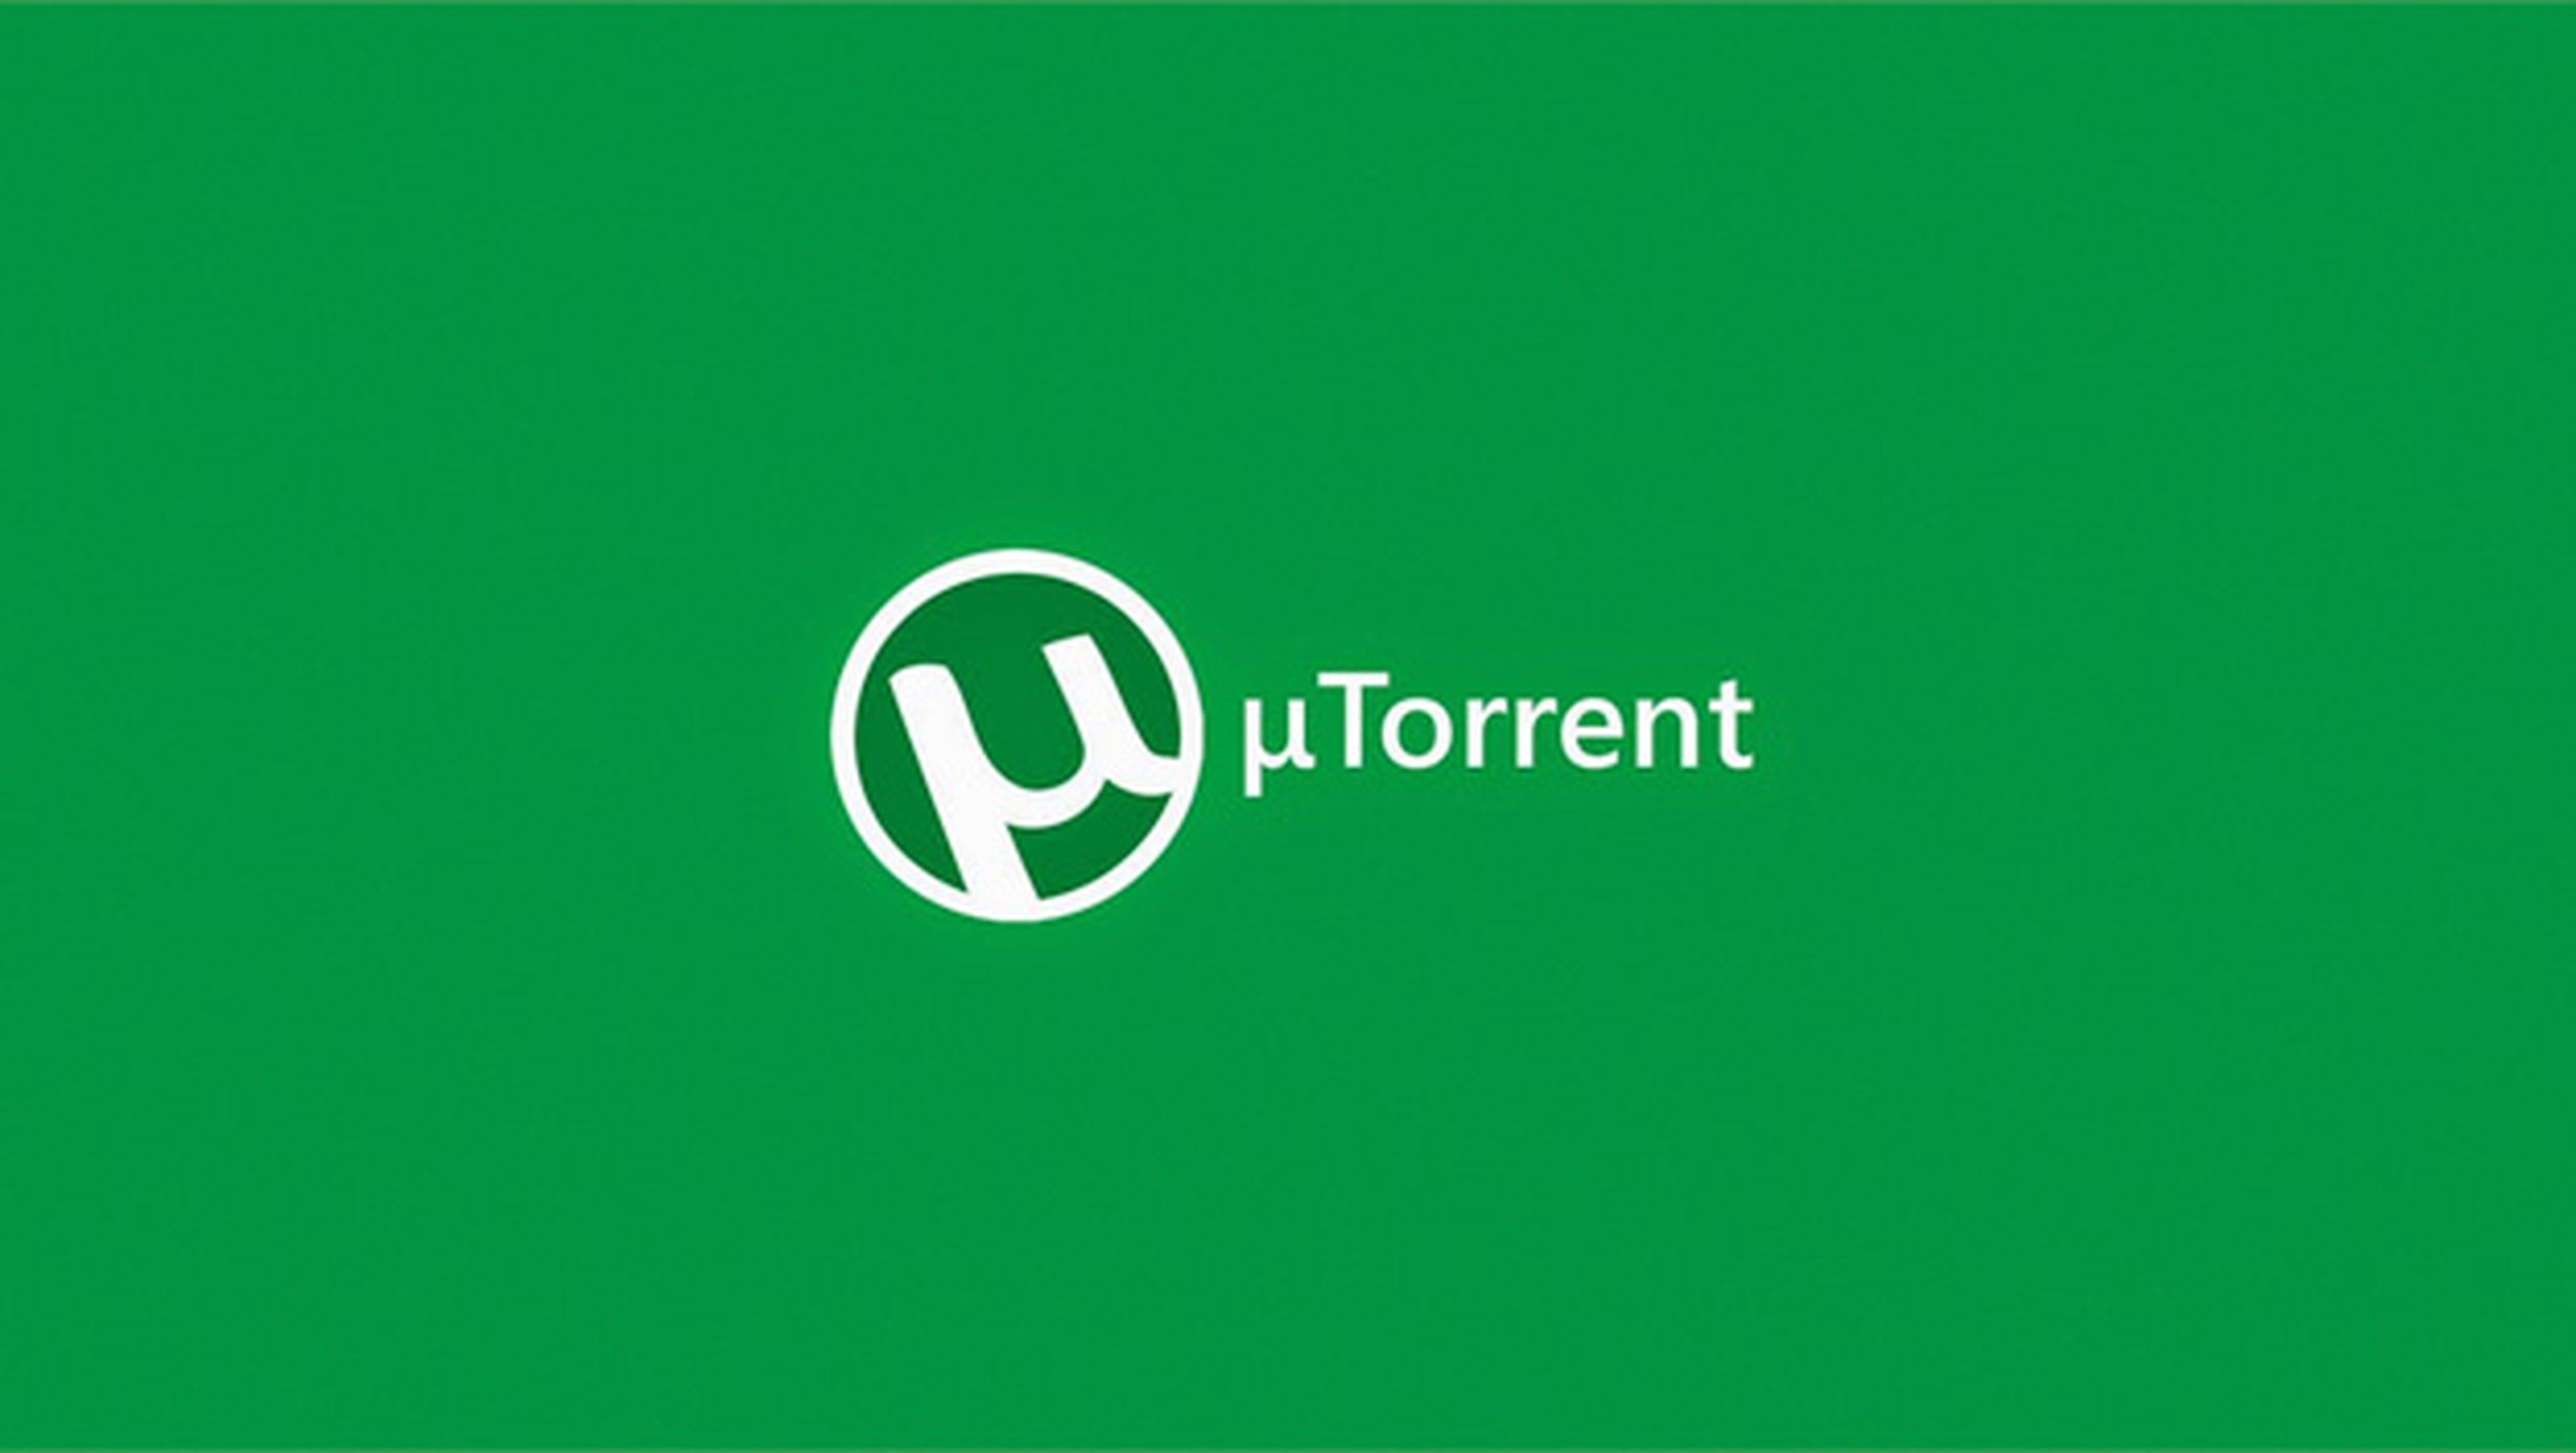 uTorrent descargas P2P gratis gratuito pago suscripcion